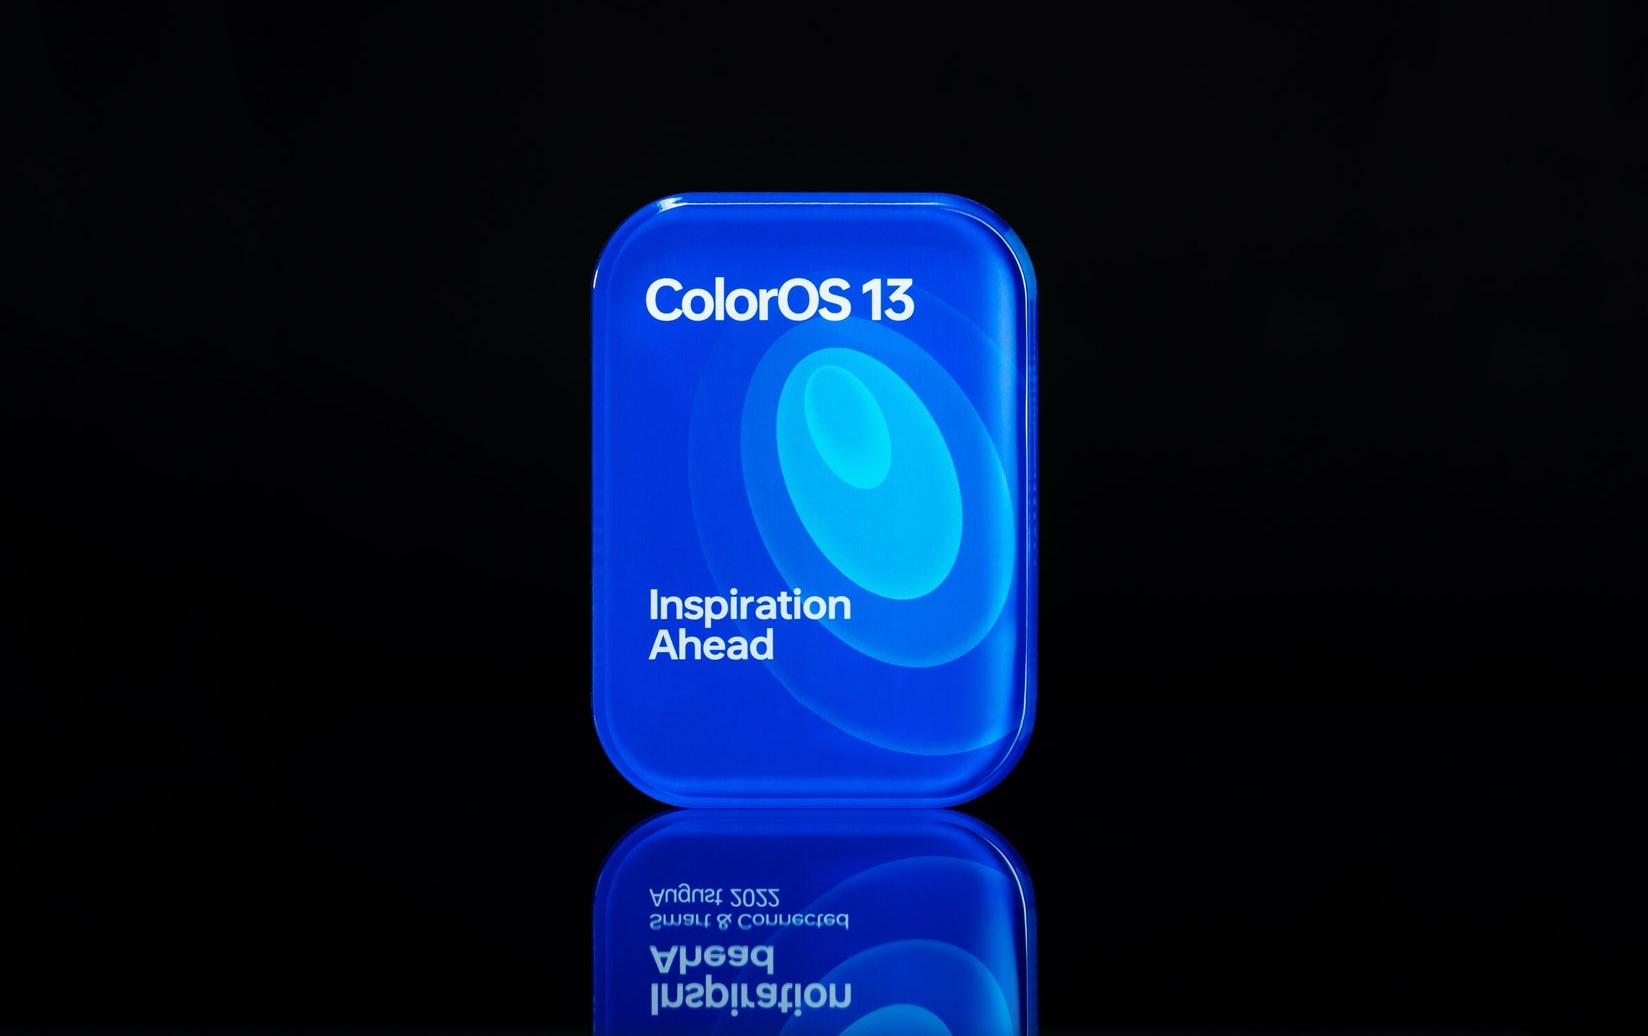 OPPO презентувала оболонку ColorOS 13 на основі Android 13